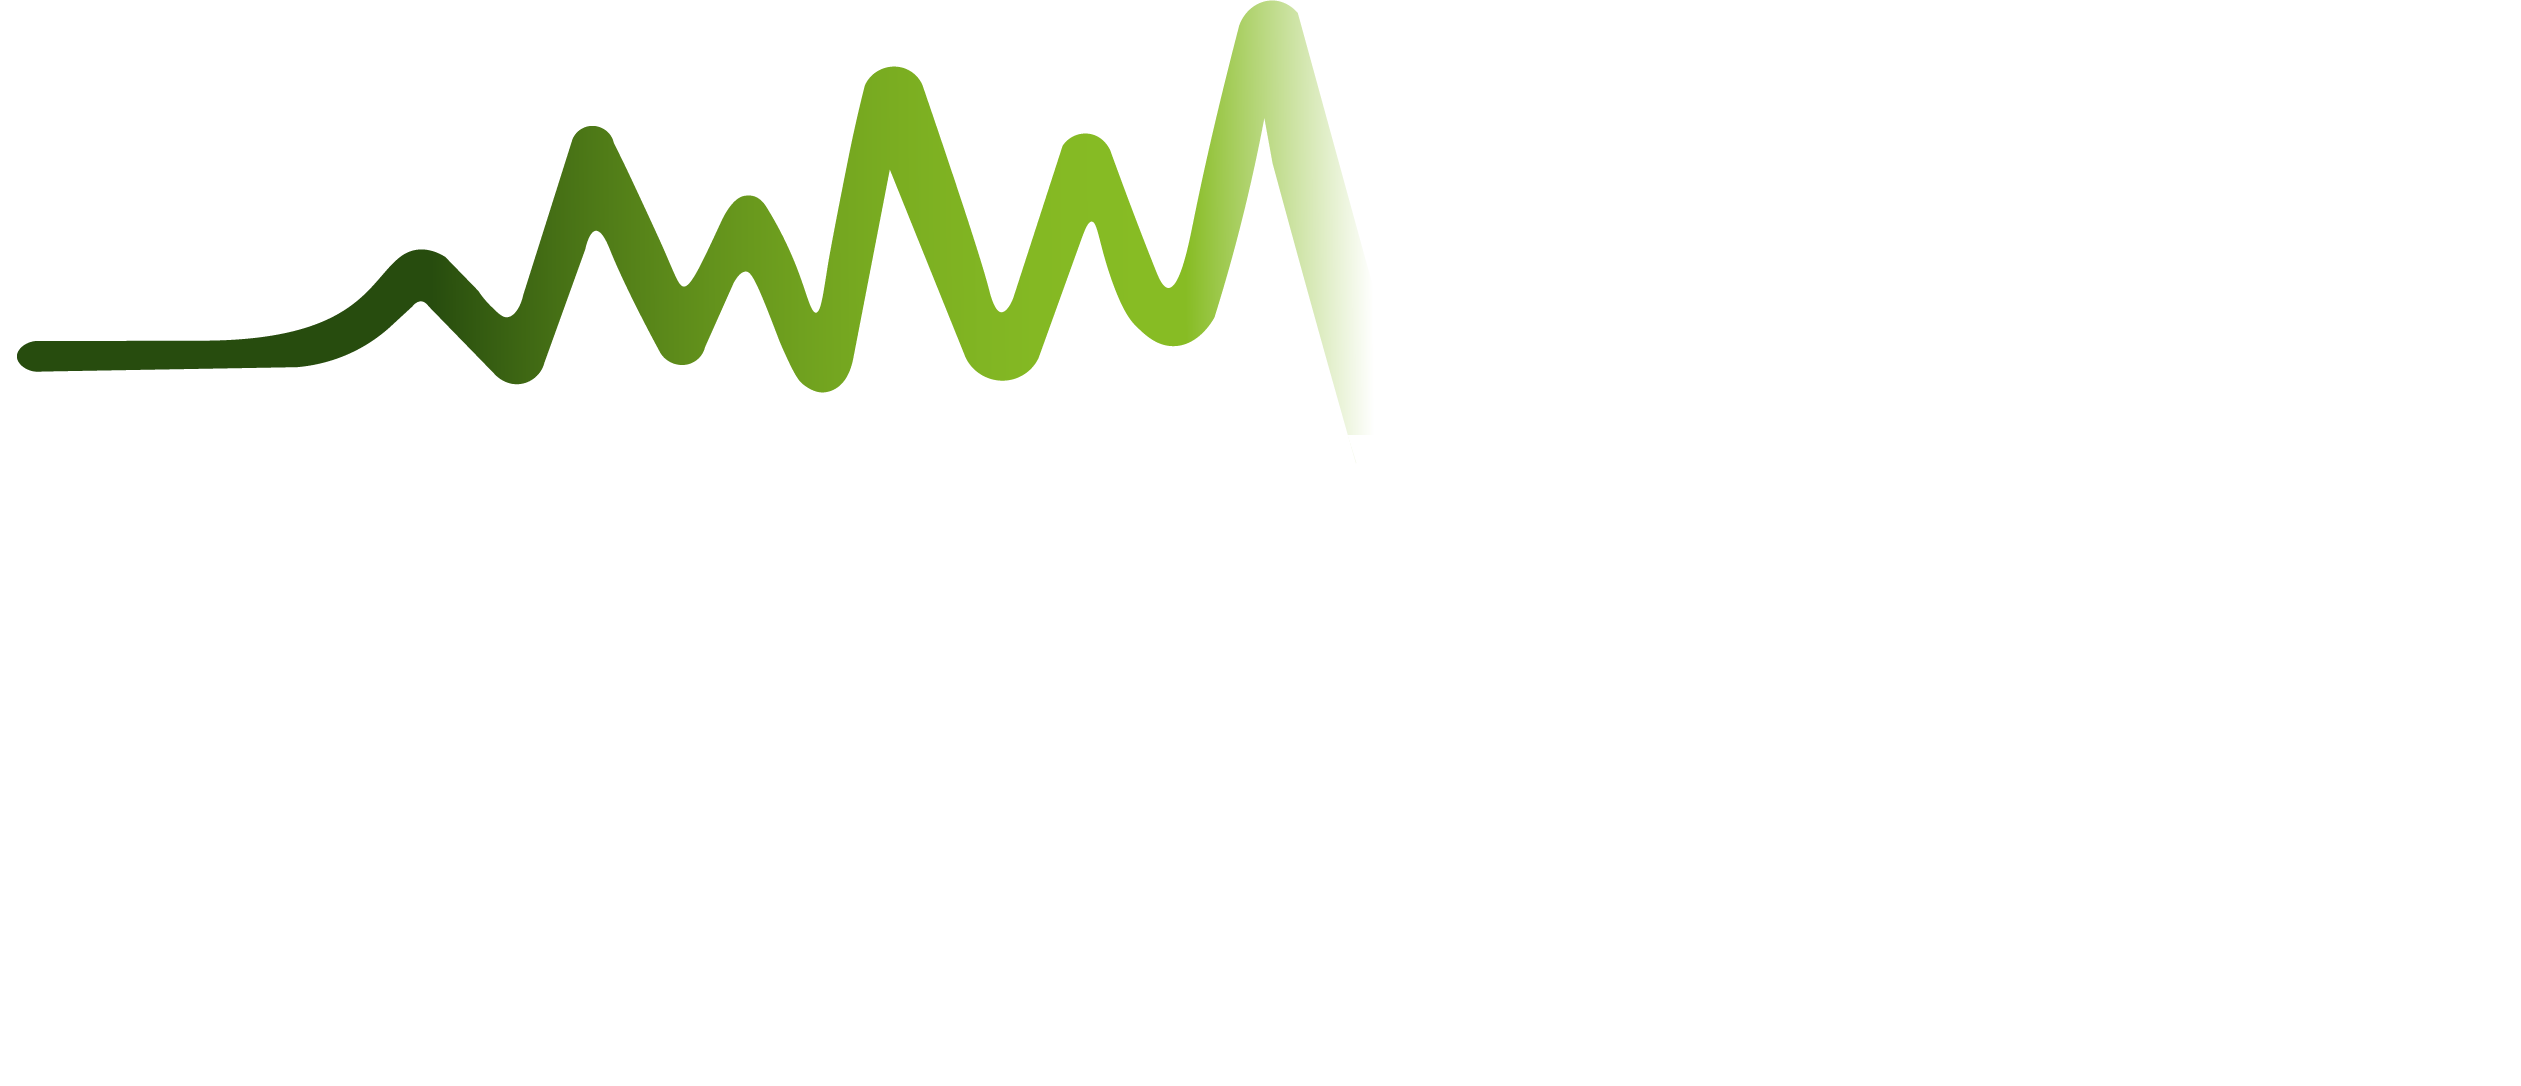 Danish Voices